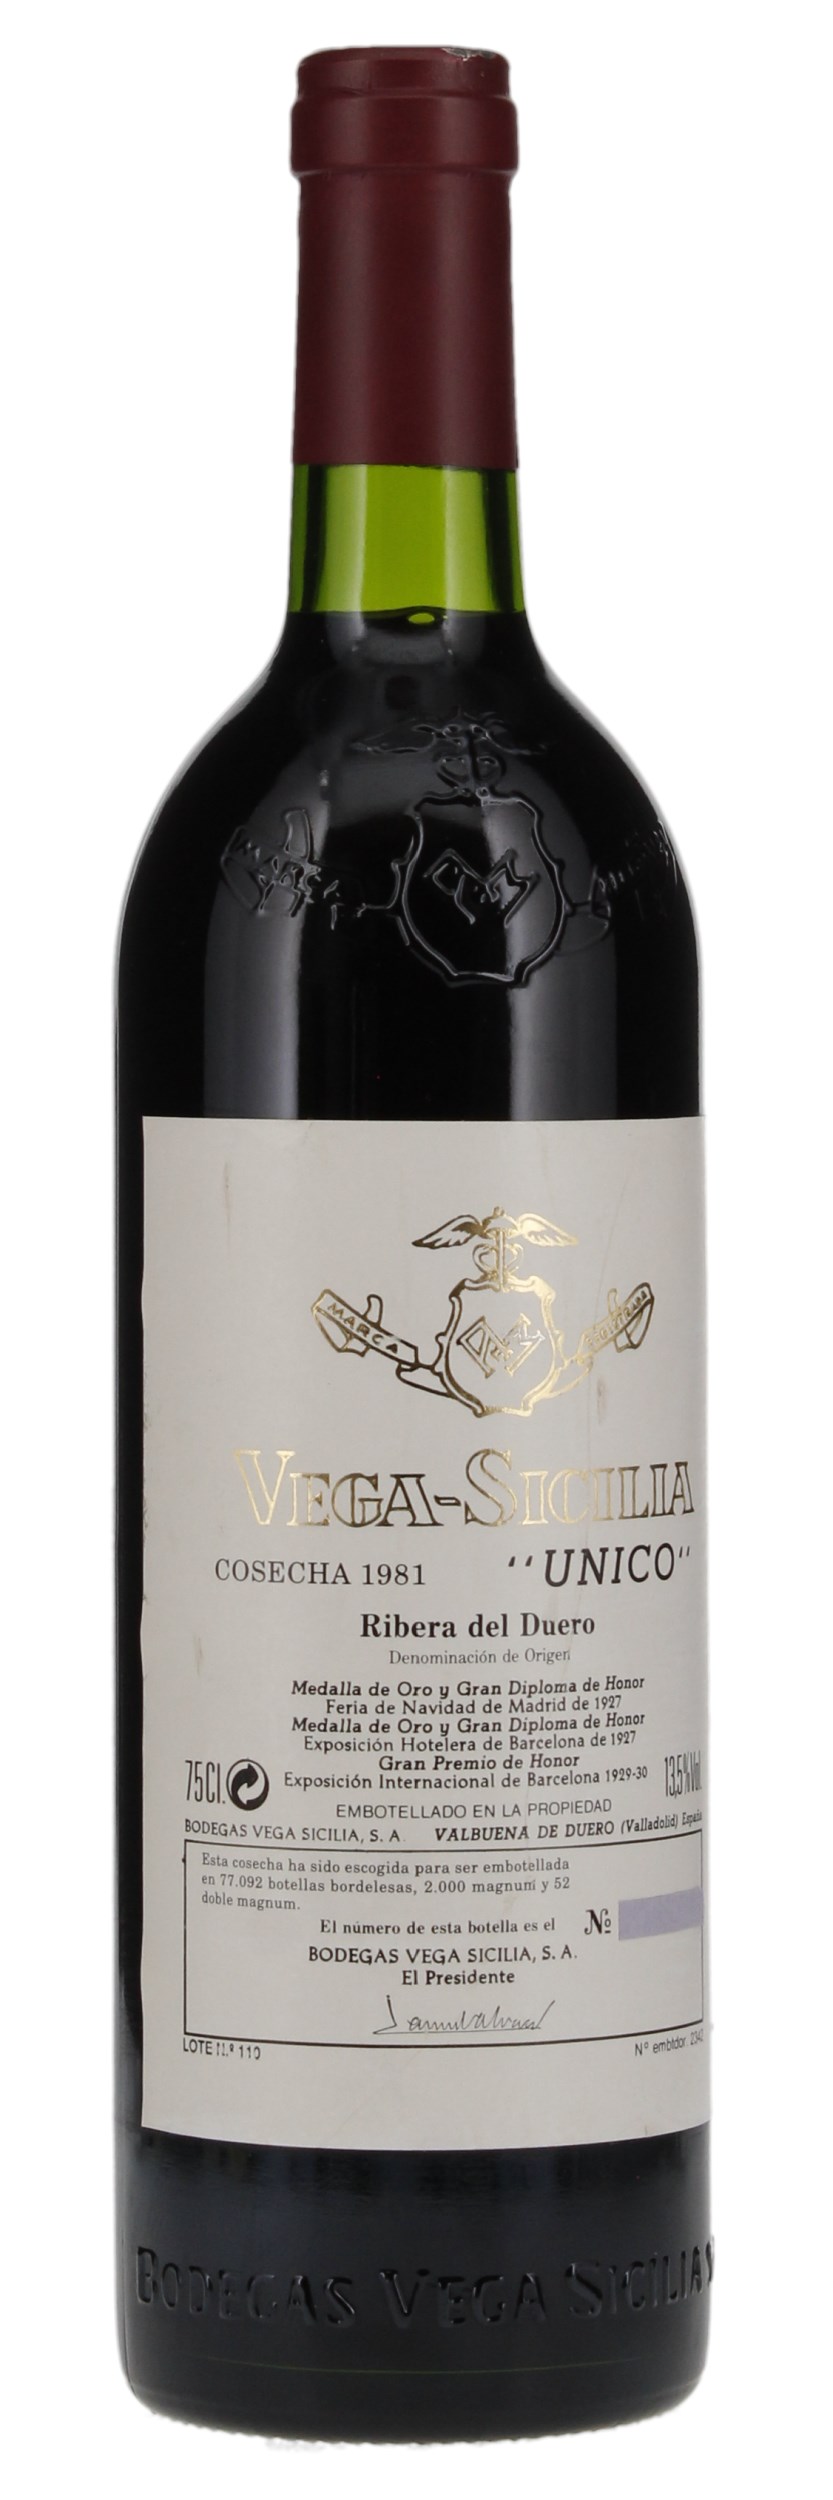 1981 Vega Sicilia Unico, 750ml